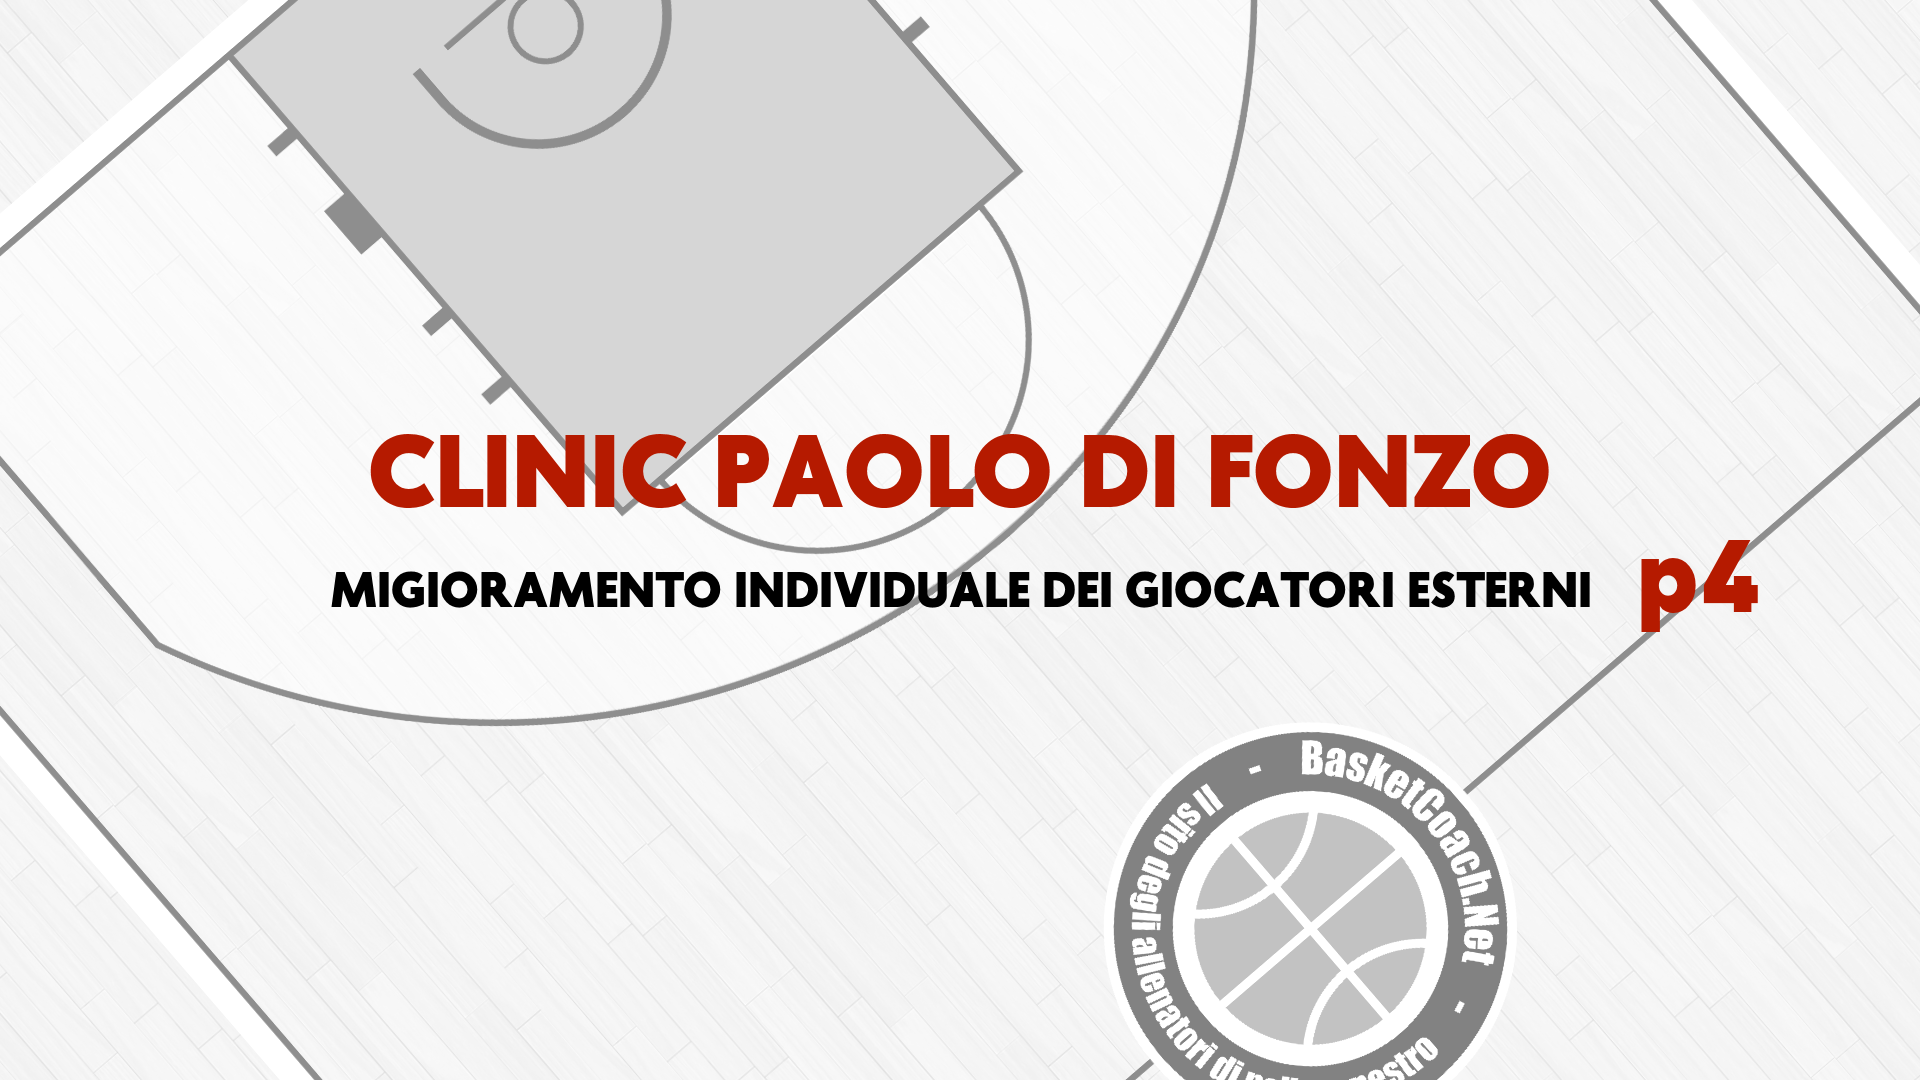 <p>BKCOACH CLINIC - Paolo Di Fonzo</p>
